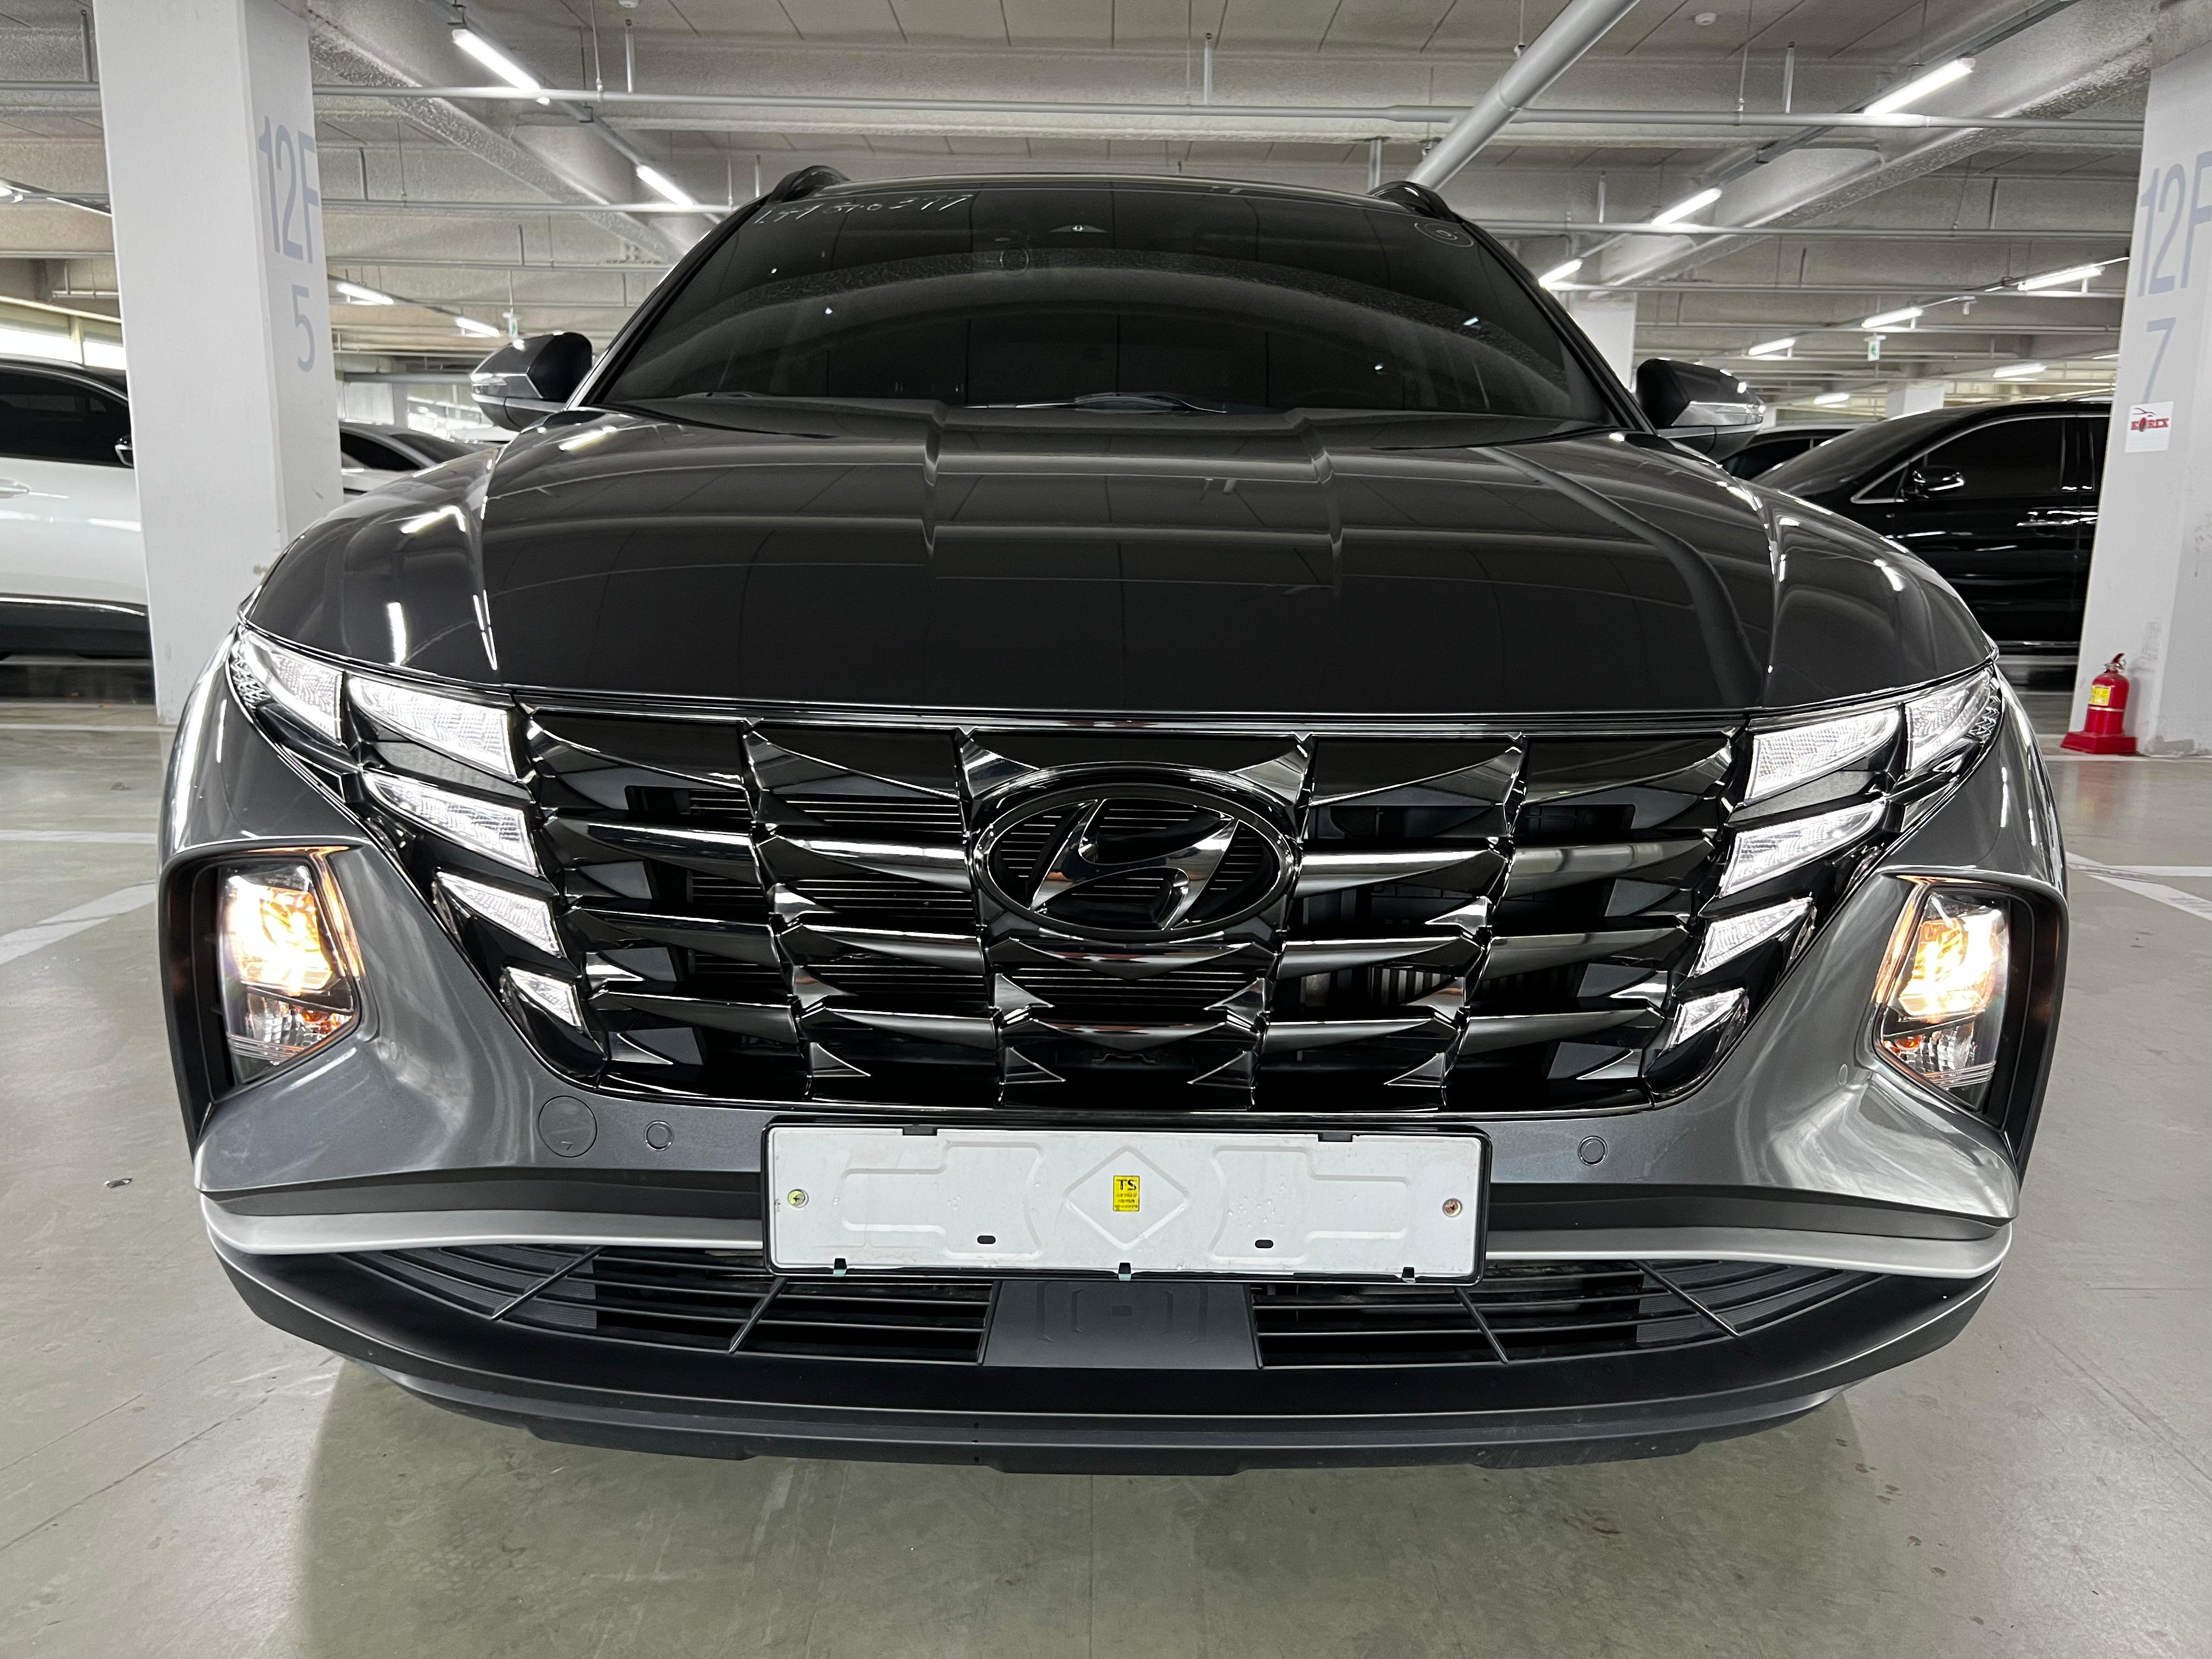 Hyundai Tucson 2WD Premium, 2021 год, дизель 2,0, пробег 66418 км. Ориентировочная стоимость автомобиля в Москве с учетом таможенной пошлины и пр. платежей 2 880 000 руб.